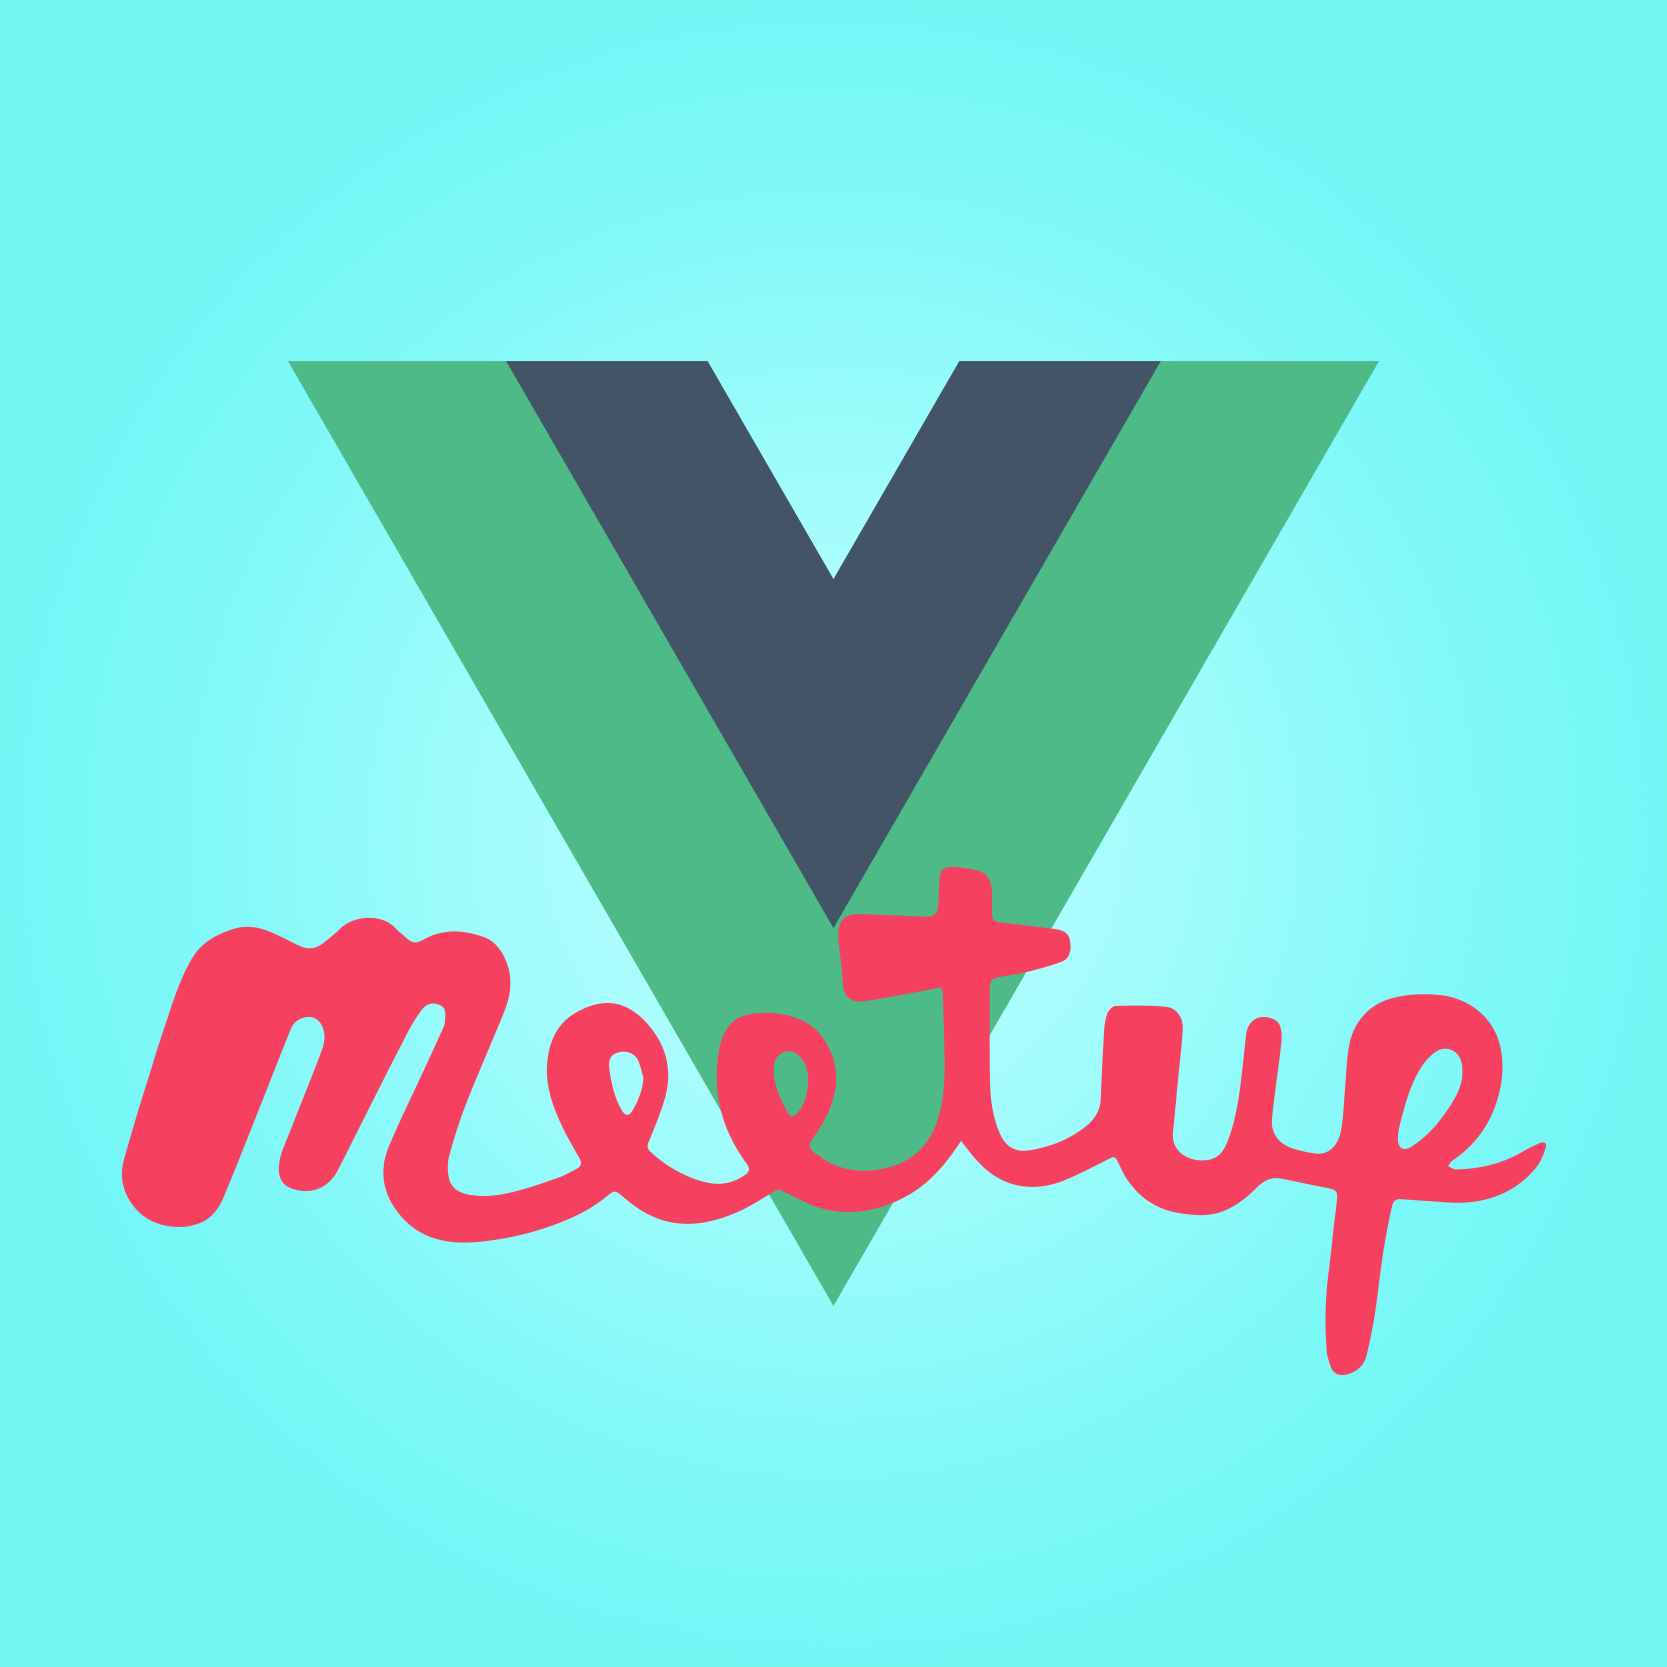 Vue.js Meetup logo